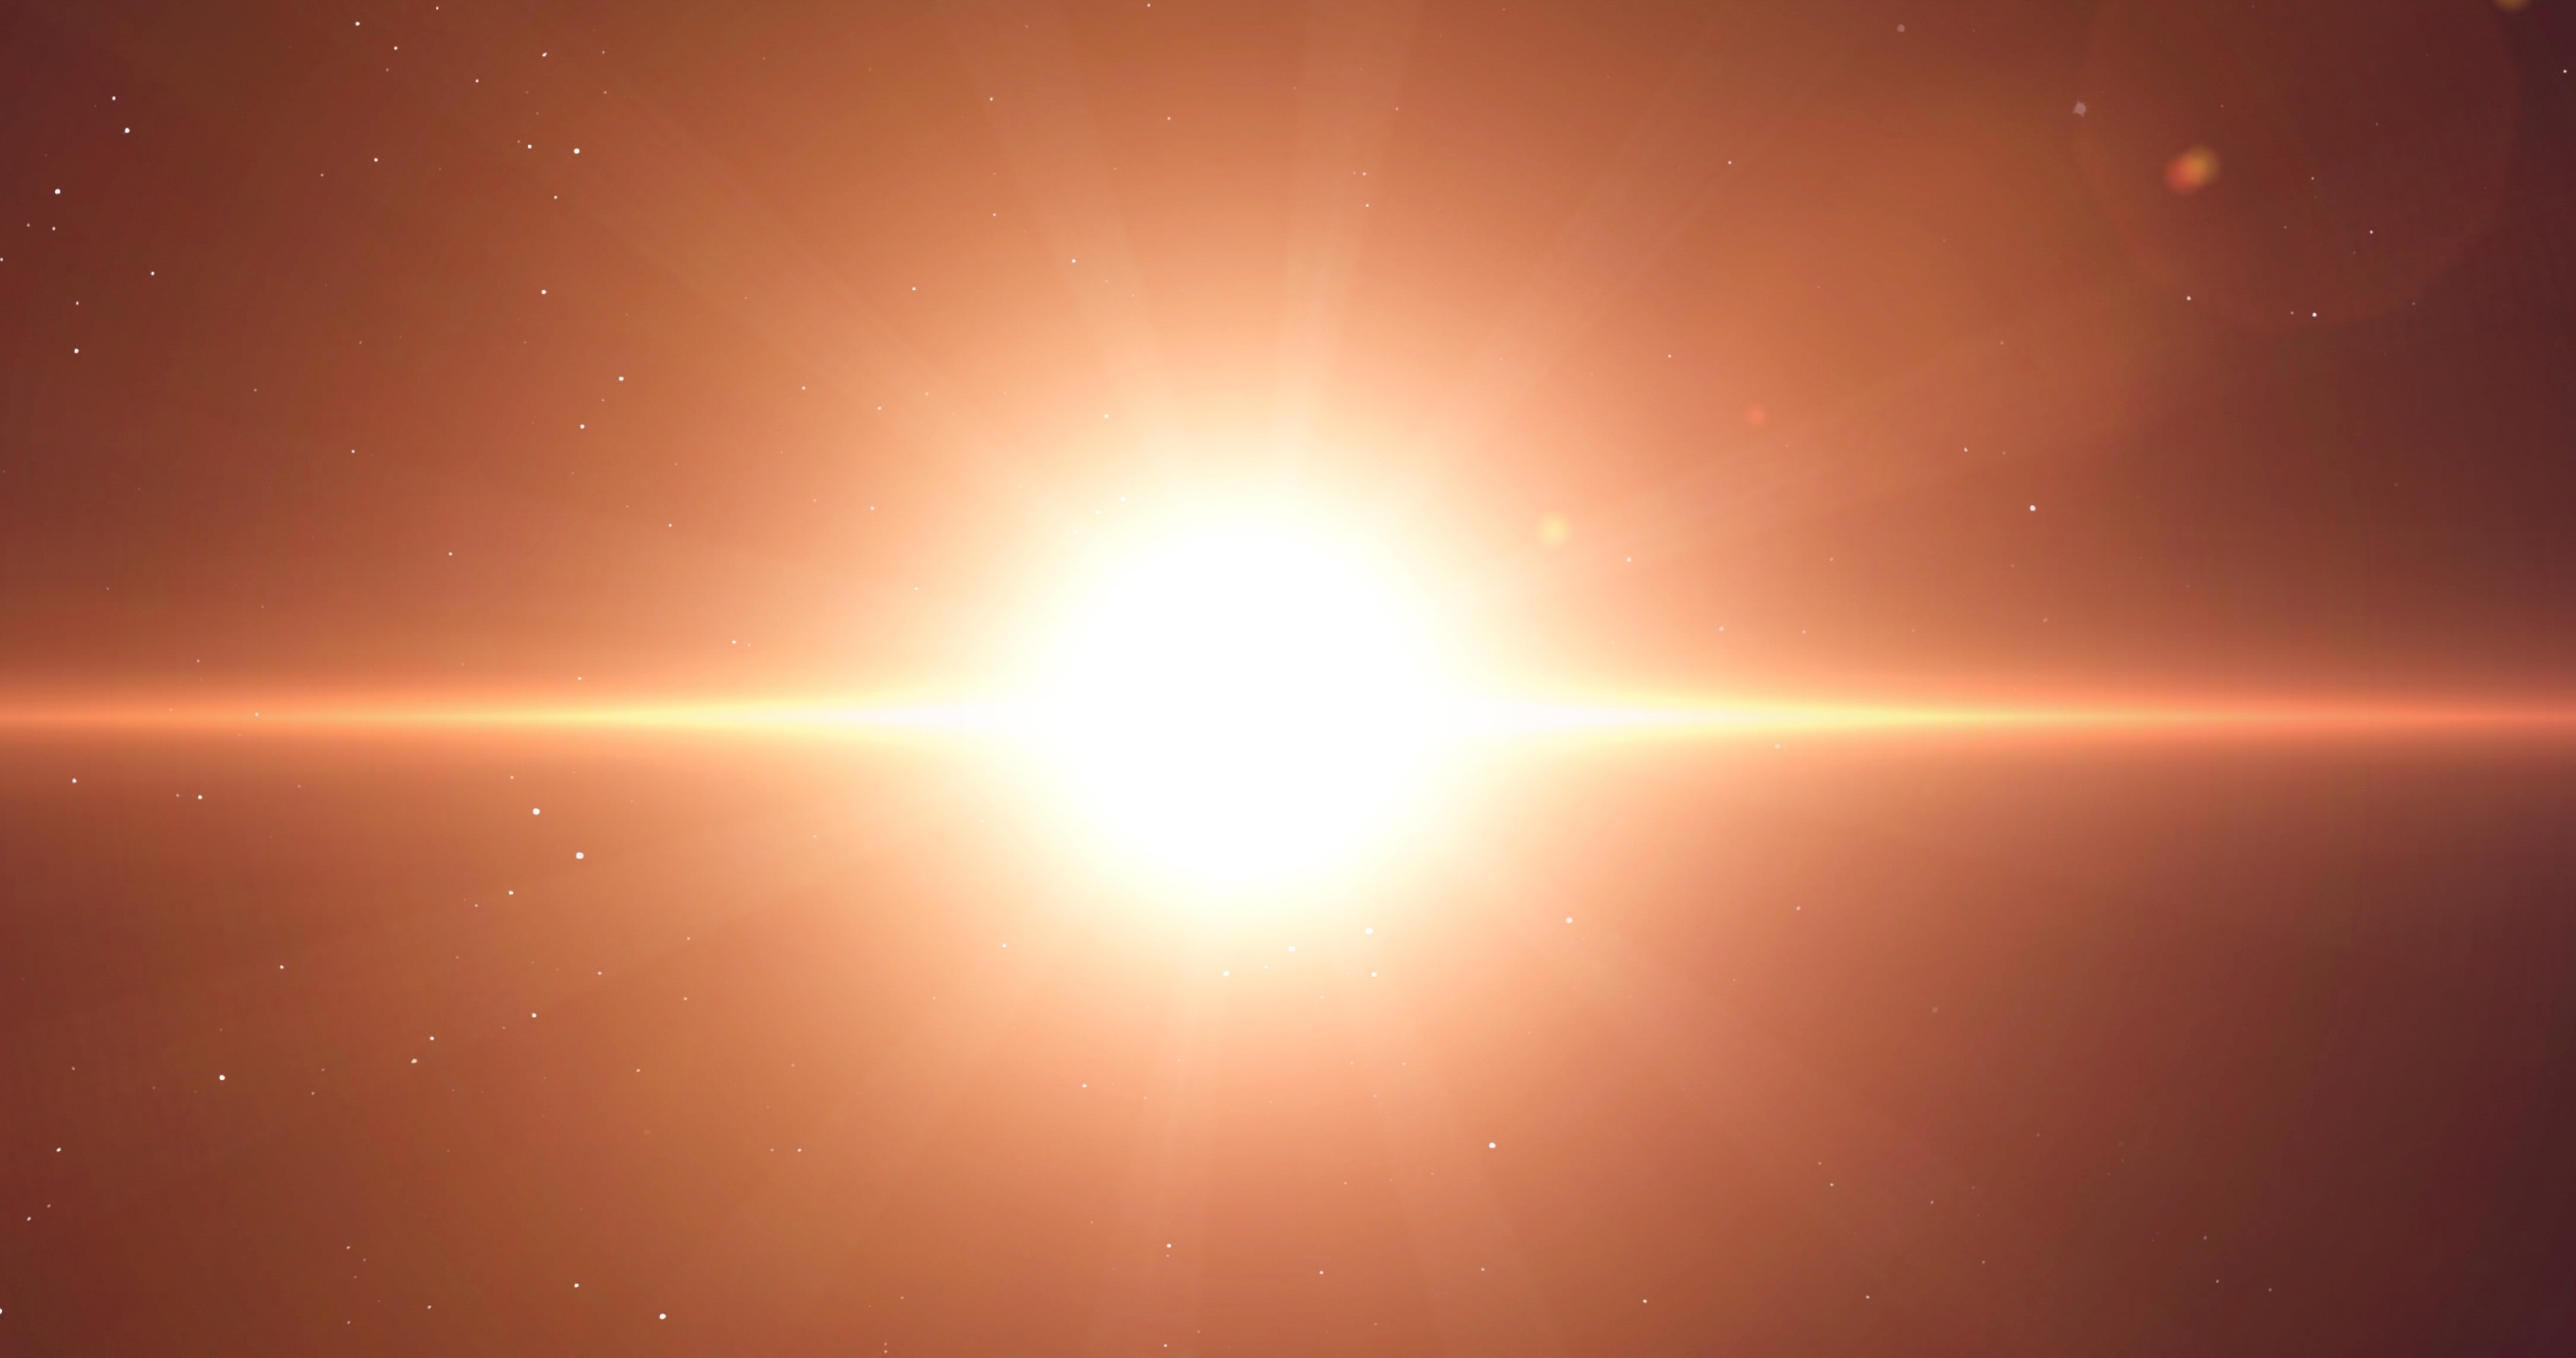 Les astronomes attendaient avec impatience la fin du cycle principal de 430 jours de variation de luminosité de Bételgeuse pour savoir comment la supergéante rouge se comporterait ensuite. Il semble qu’elle soit en train de regagner en éclat. © Vadimsadovski, Adobe Stock